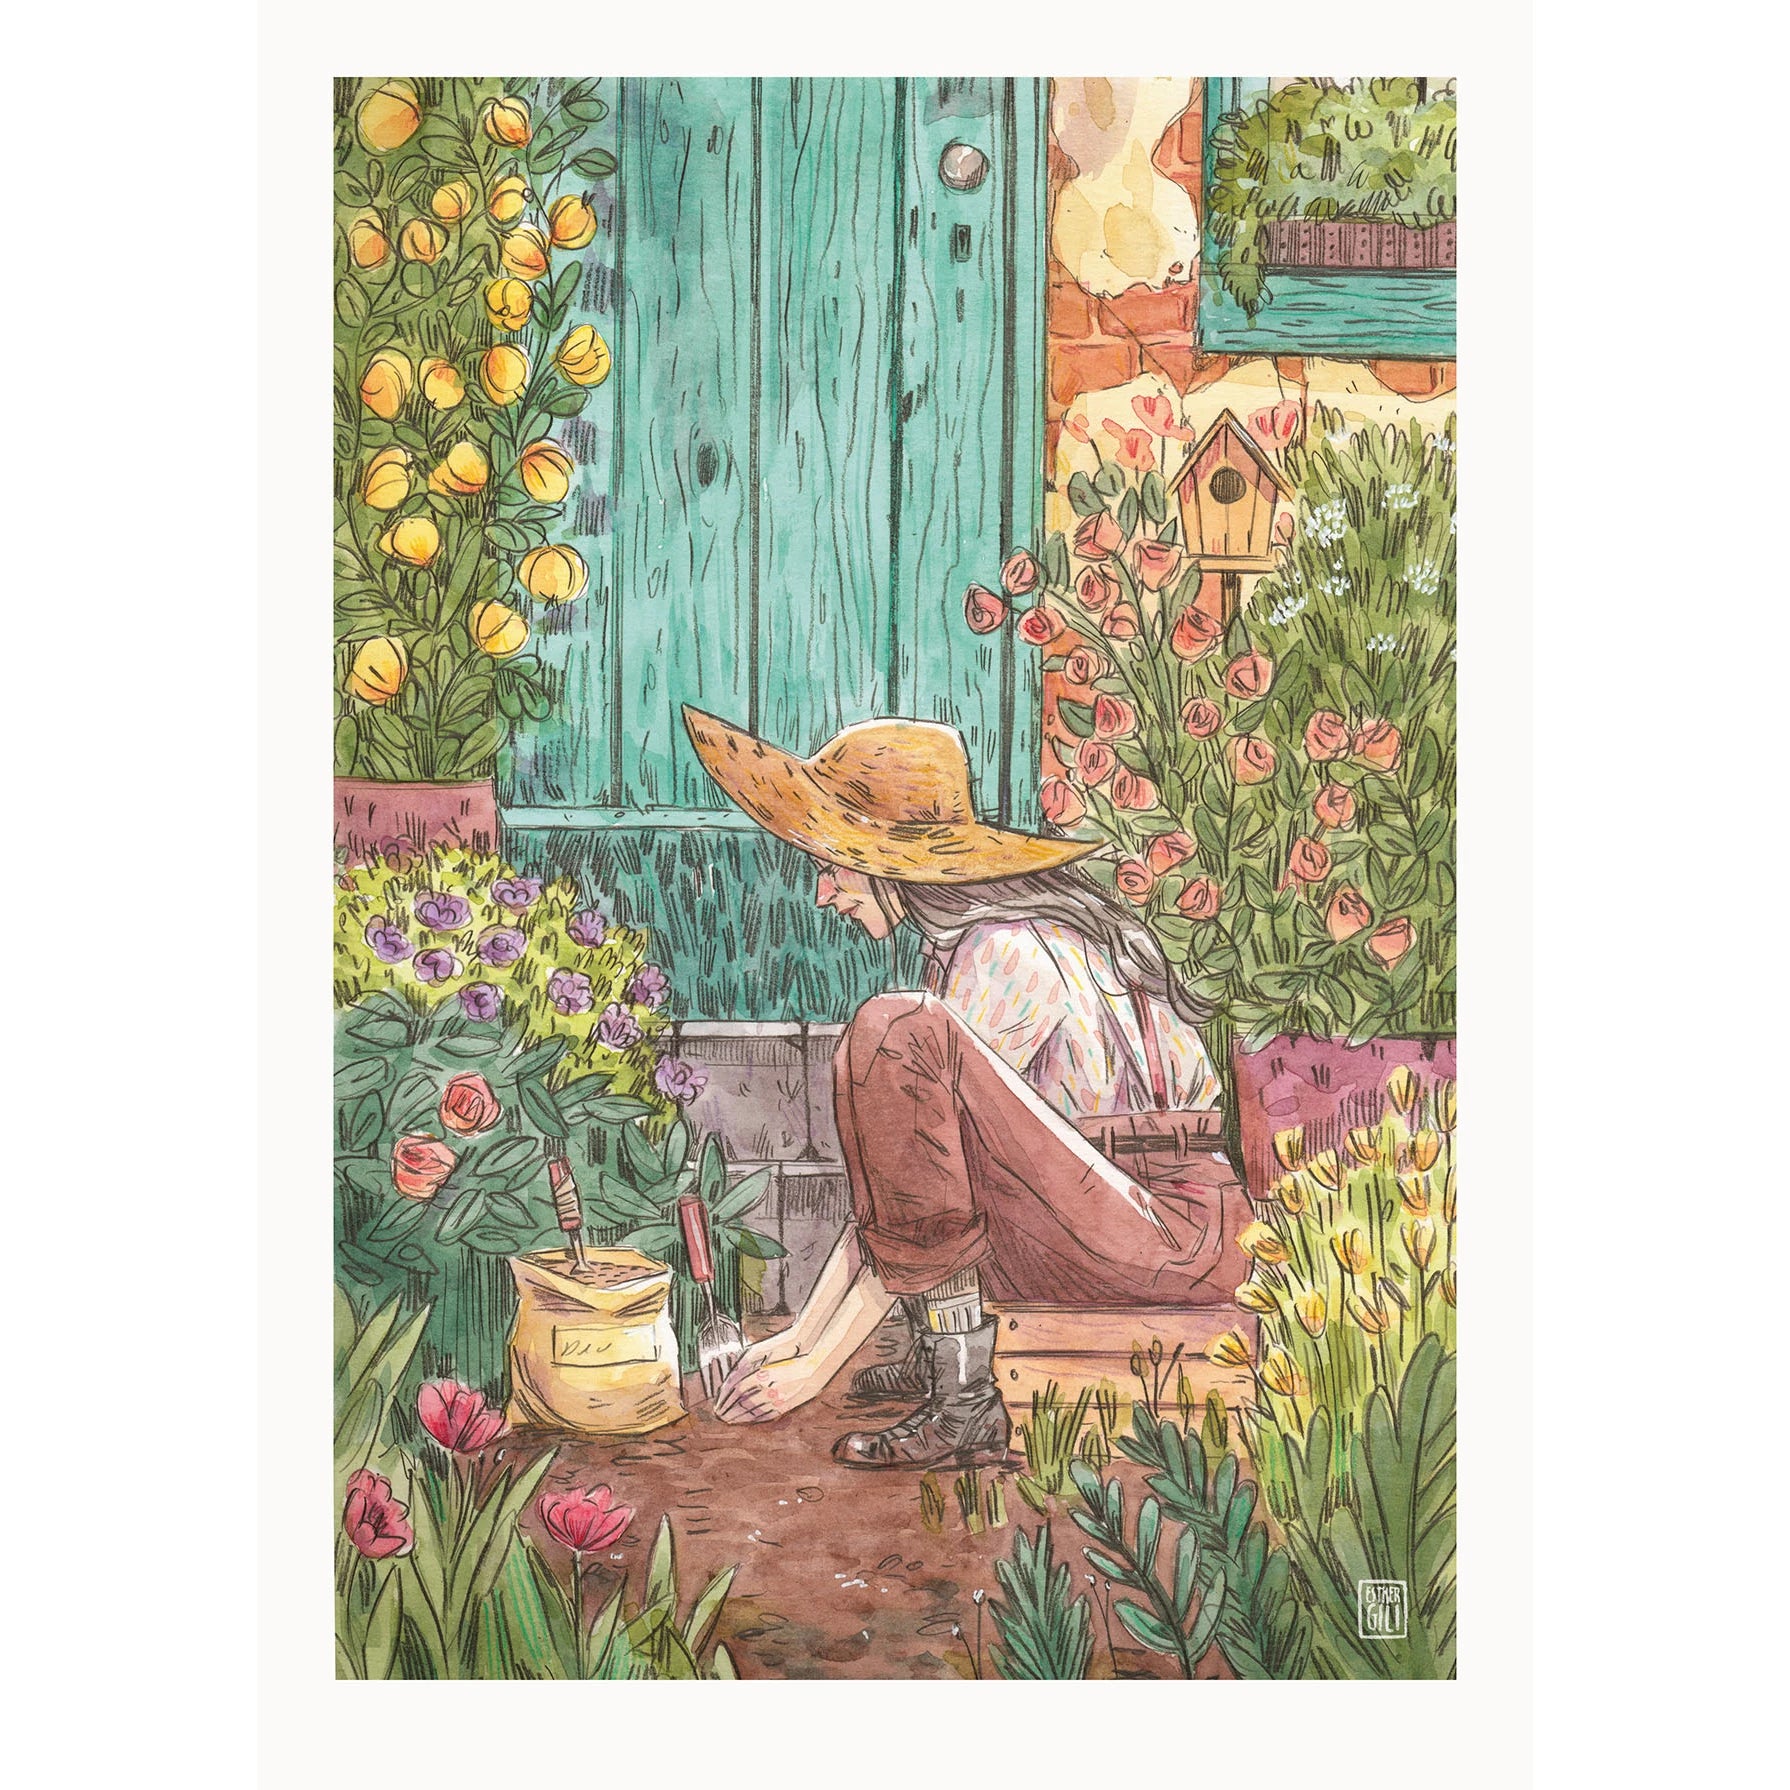 Ilustración de Esther Gili de una mujer con sombrero sentada en el jardín sembrando flores rodeada de plantas